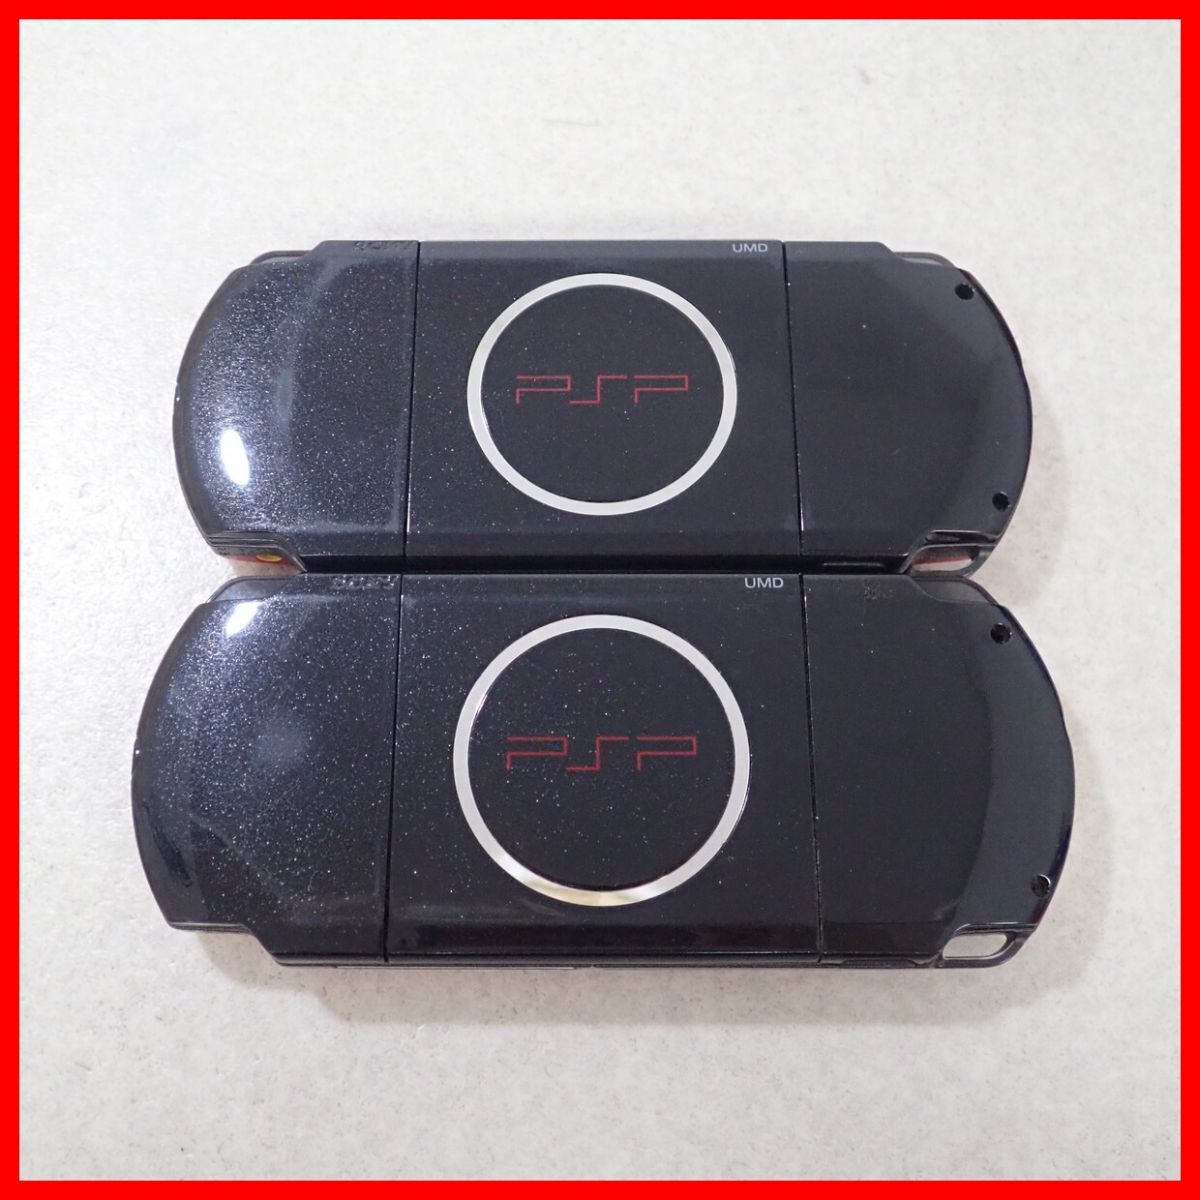 PSP PlayStation * портативный корпус PSP-3000 красный / черный VALUE PACK совместно 2 шт. комплект SONY коробка мнение есть первый период . settled Junk [20